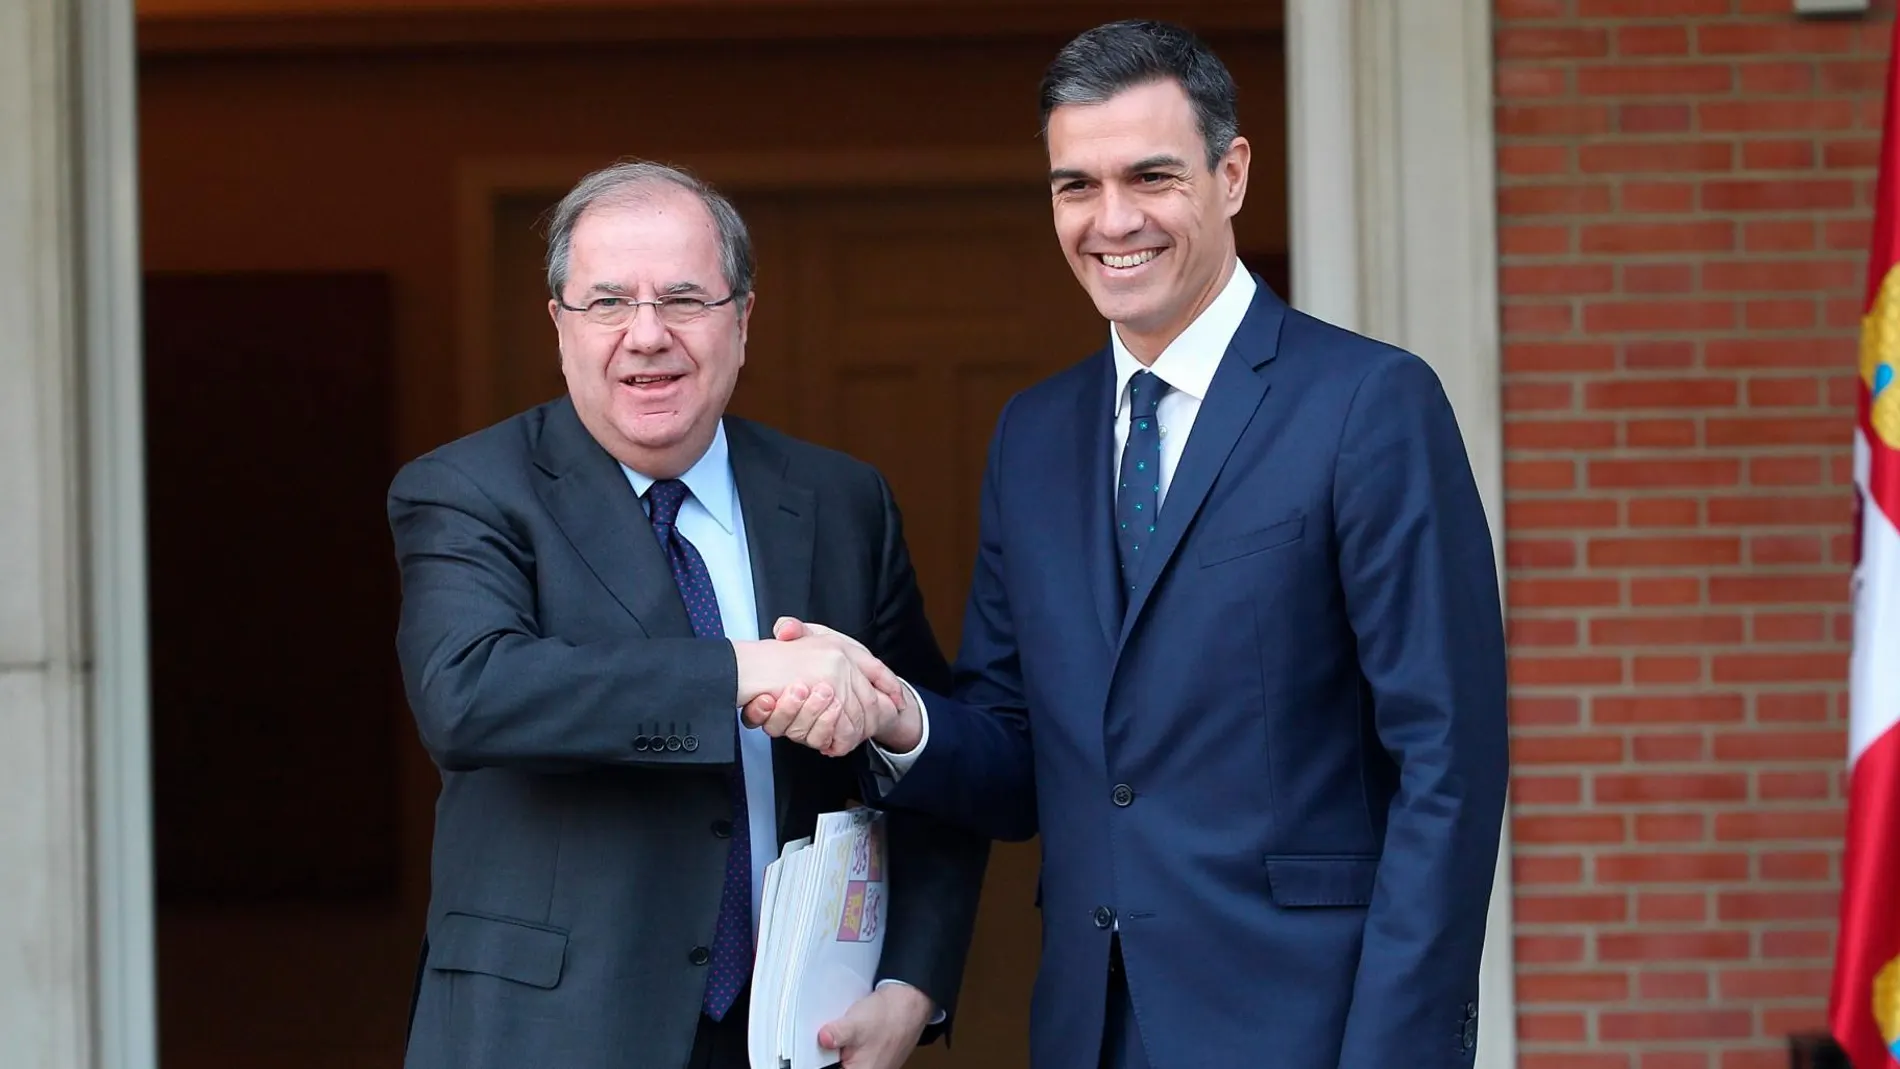 El presidente de la Junta de Castilla y León, Juan Vicente Herrera, estrecha la mano al del Gobierno de España, Pedro Sánchez, a la entrada de La Moncloa